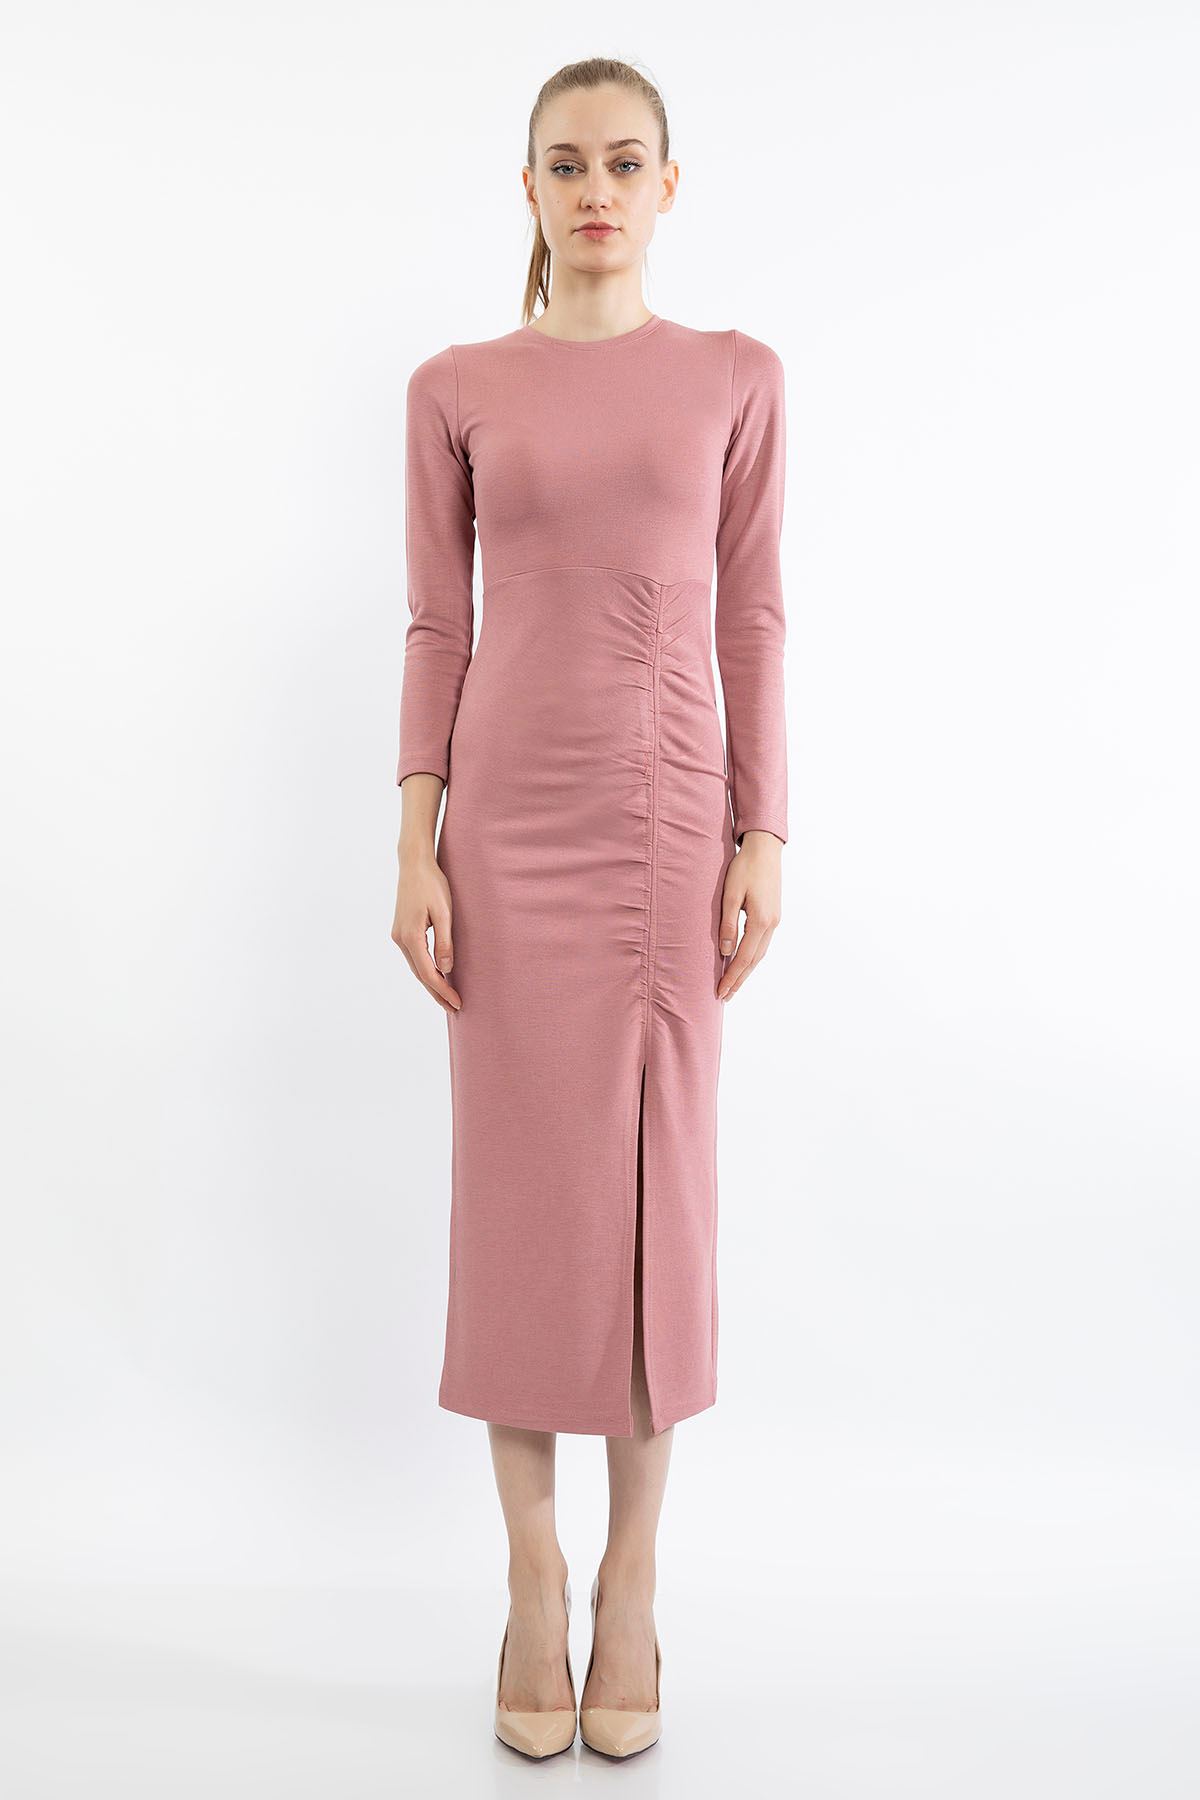 Çelik Örme Kumaş Dar Kalıp Büzgü Detay Yırtmaçlı Kadın Elbise-Gül Kurusu